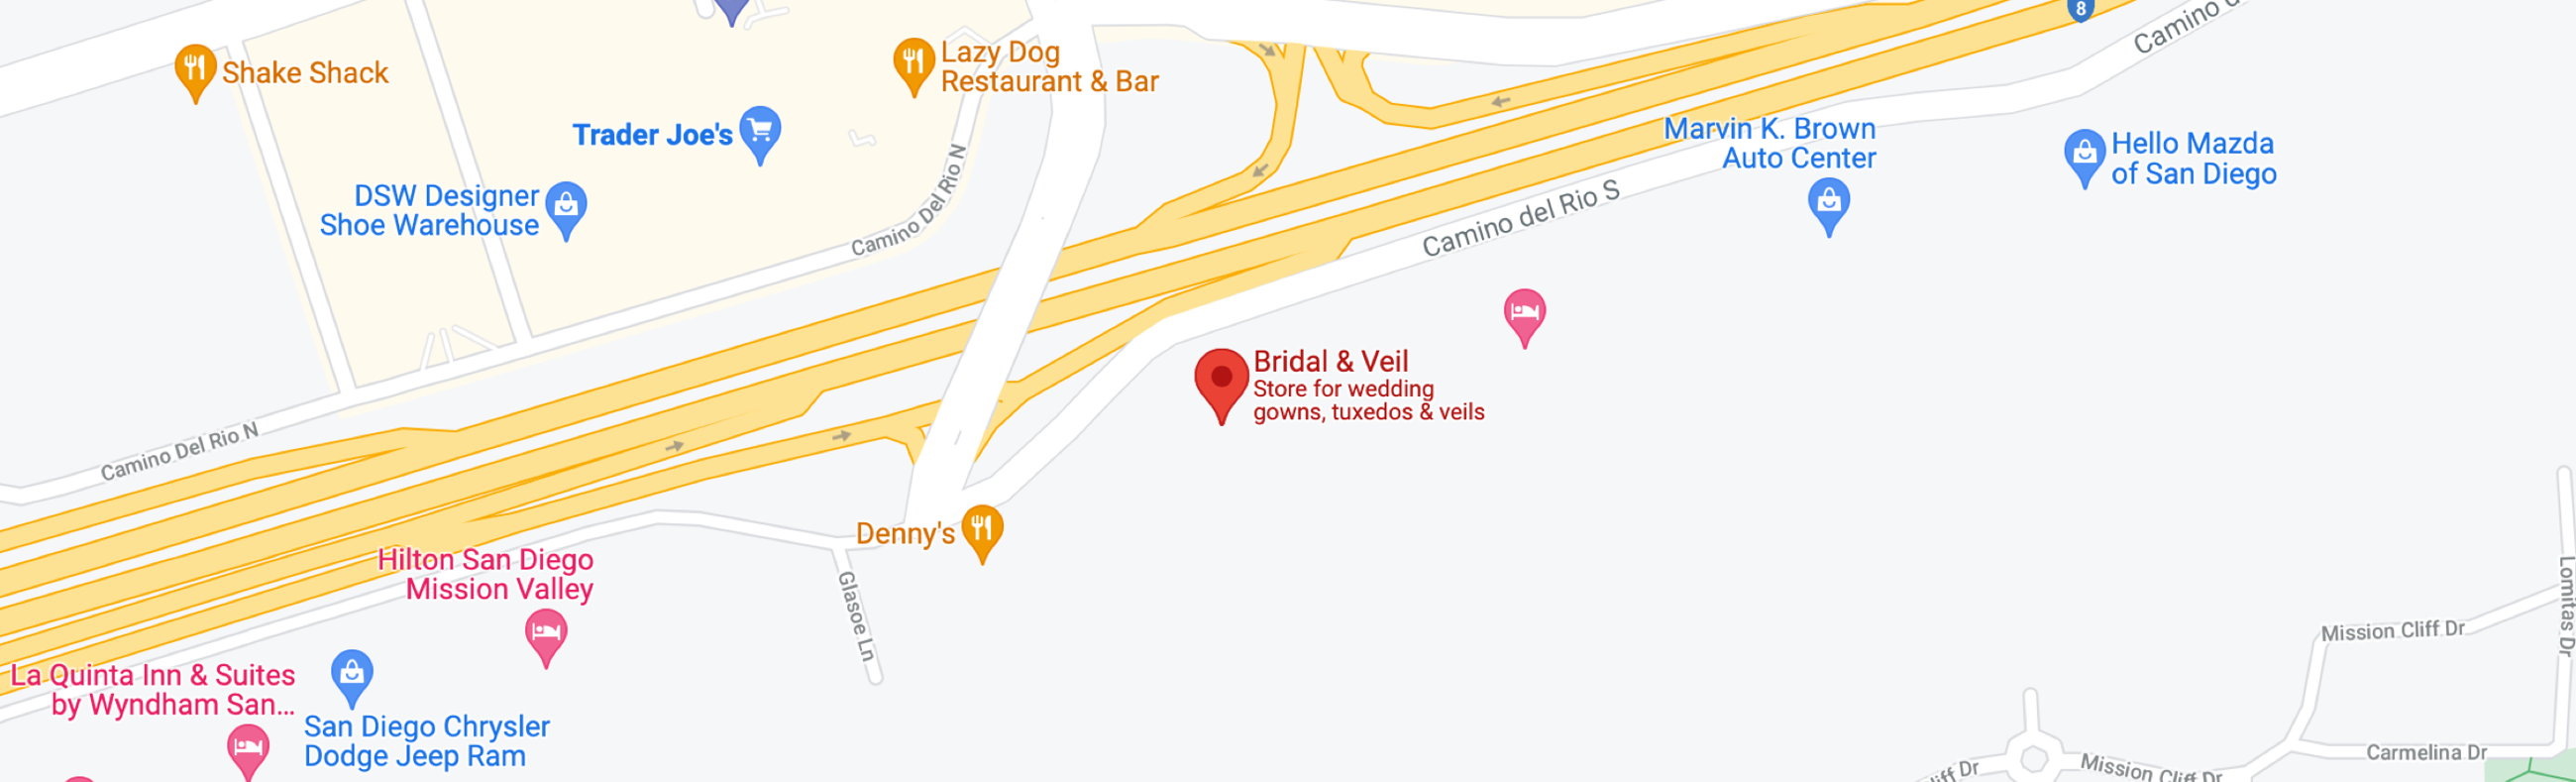 Bridal & Veil Location